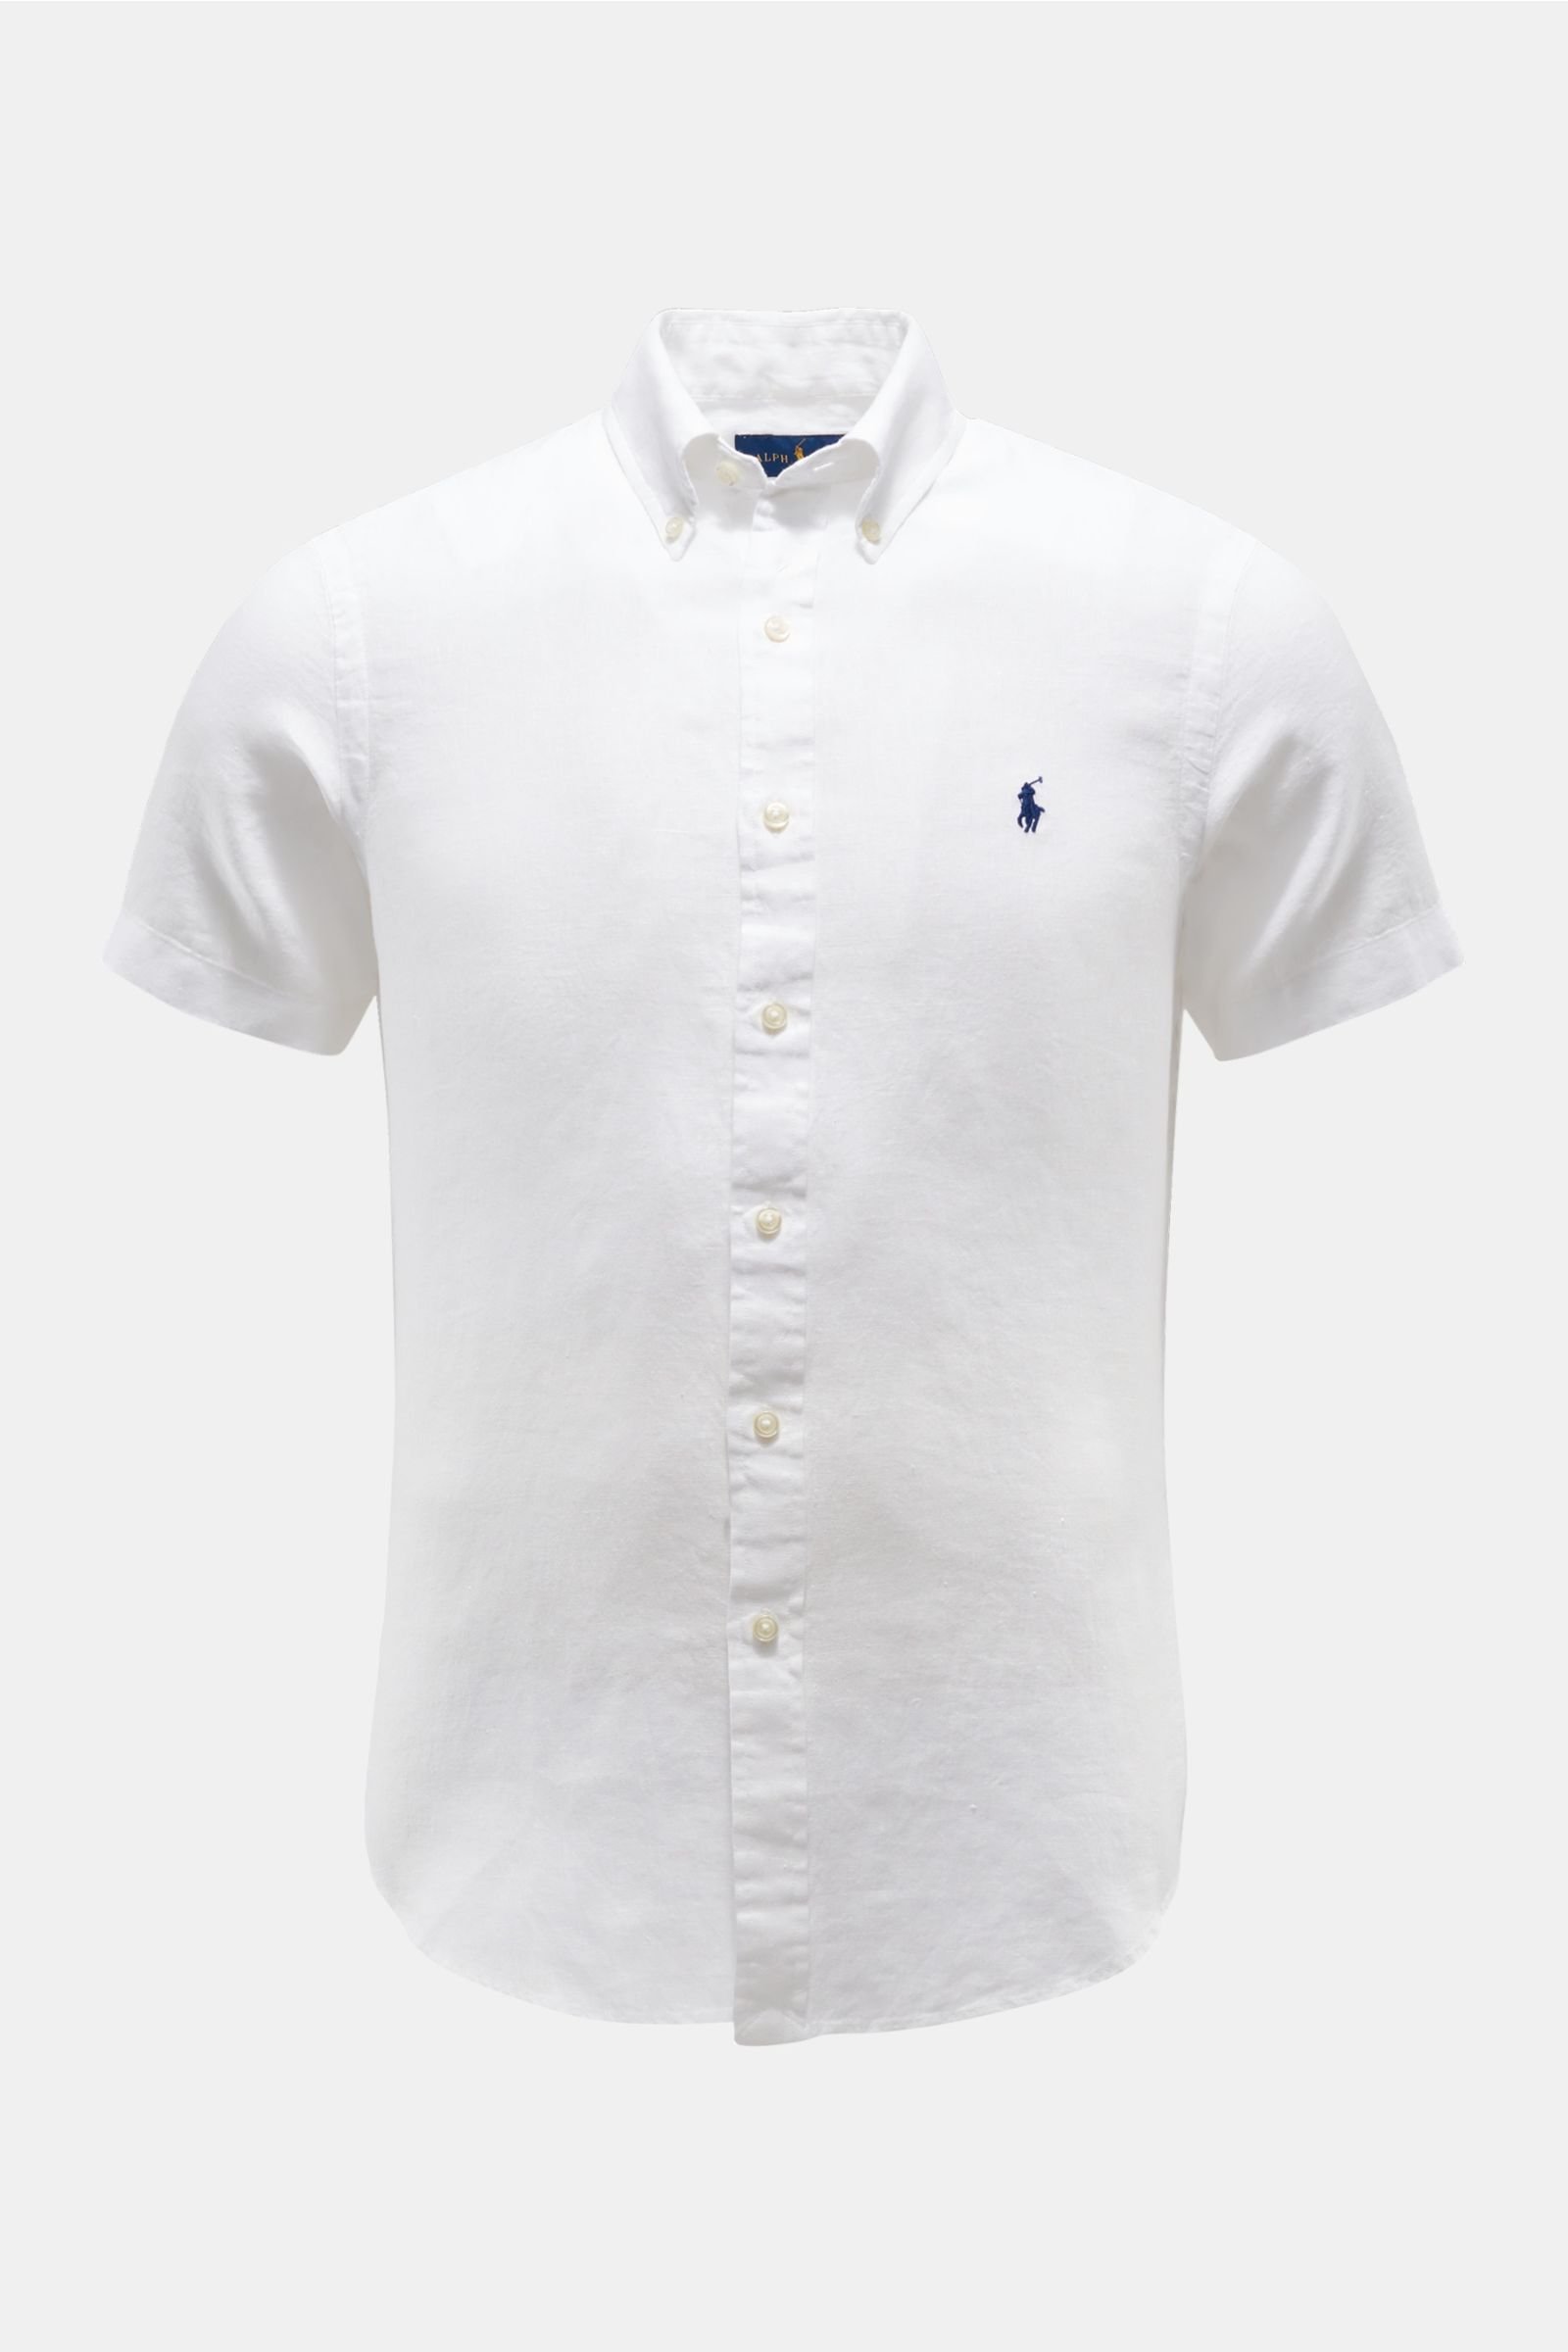 Linen short sleeve shirt button-down collar white